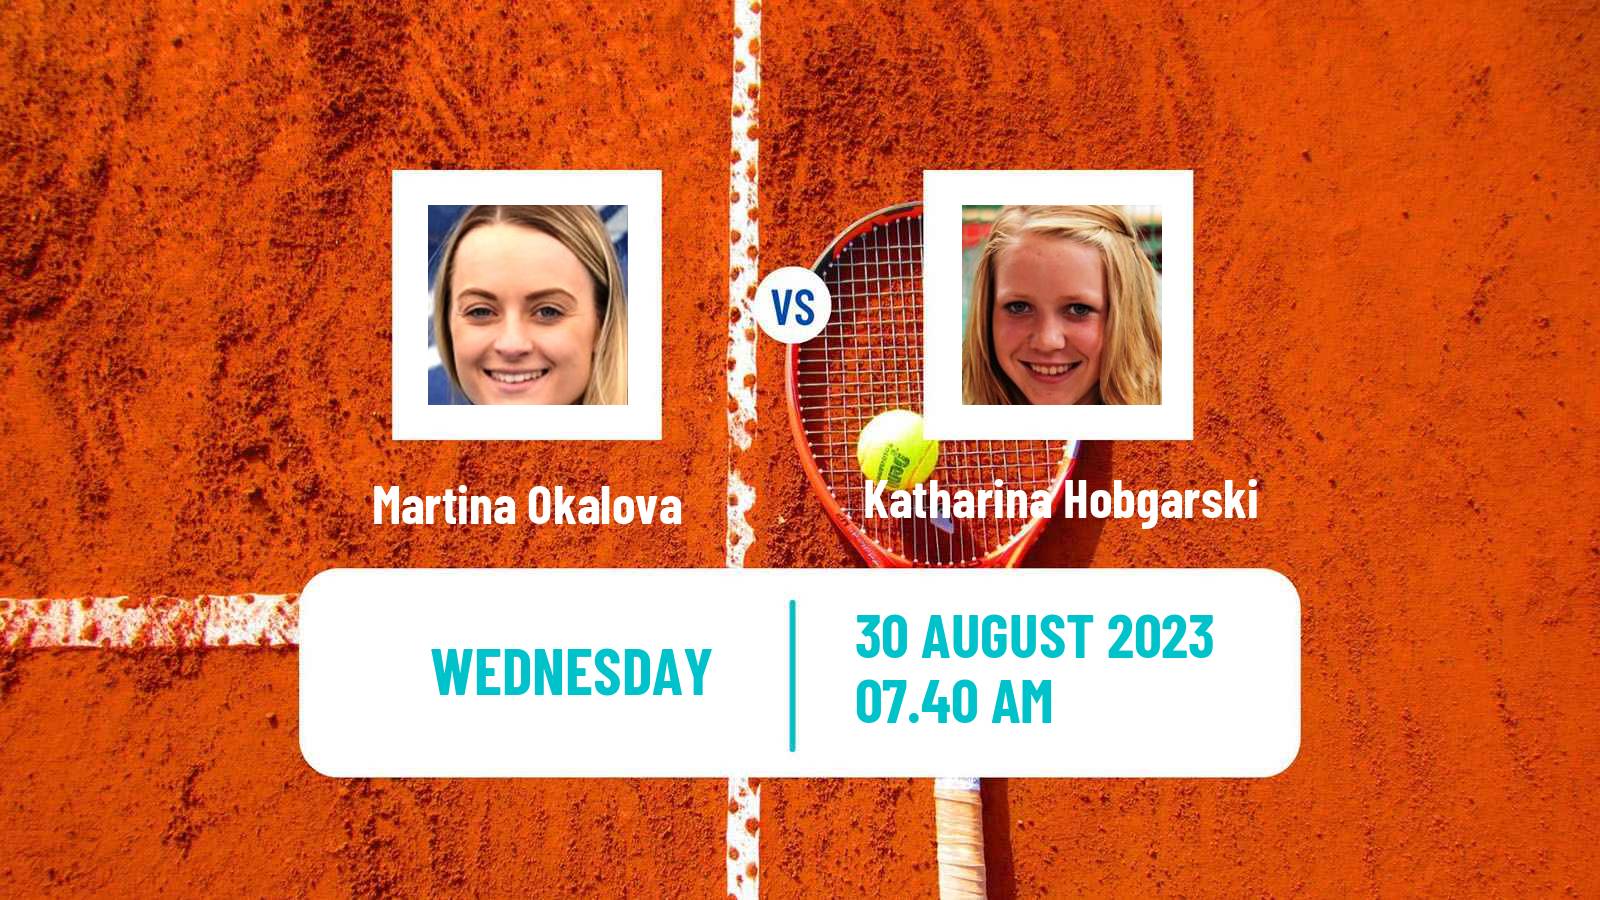 Tennis ITF W60 Prague 2 Women Martina Okalova - Katharina Hobgarski